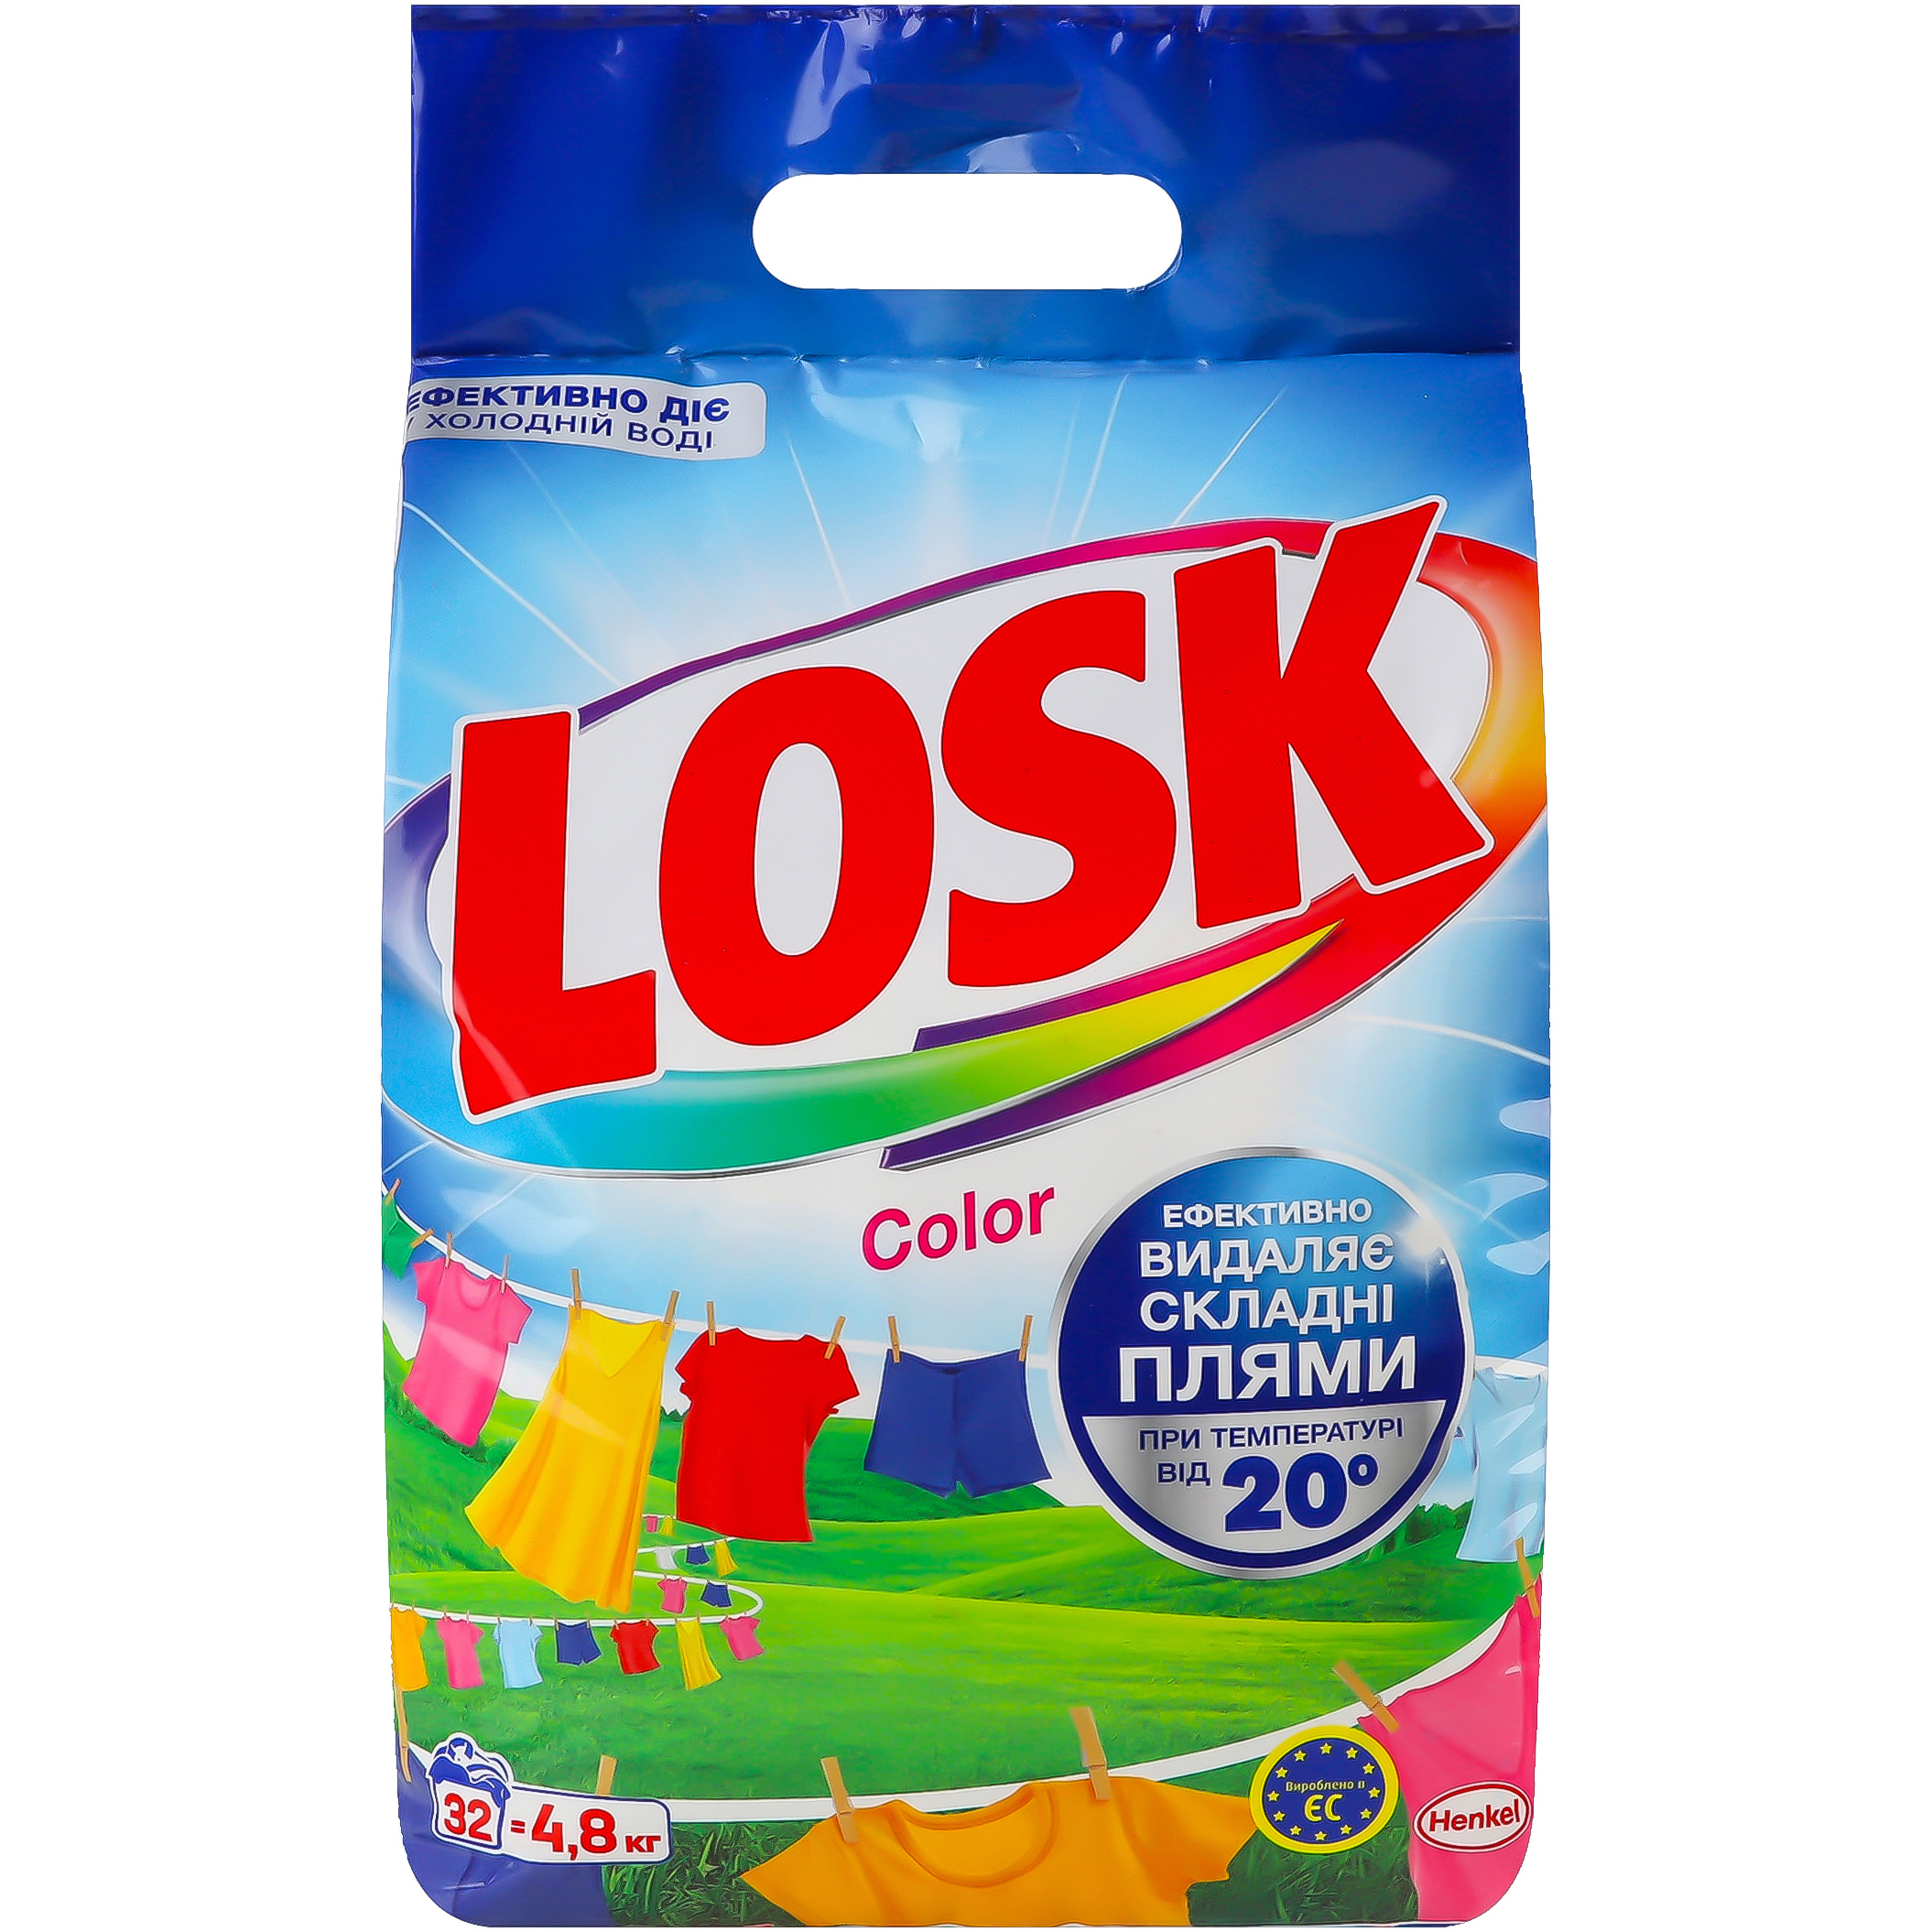 Стиральный порошок Losk Color Автомат 4.8кг фото 1